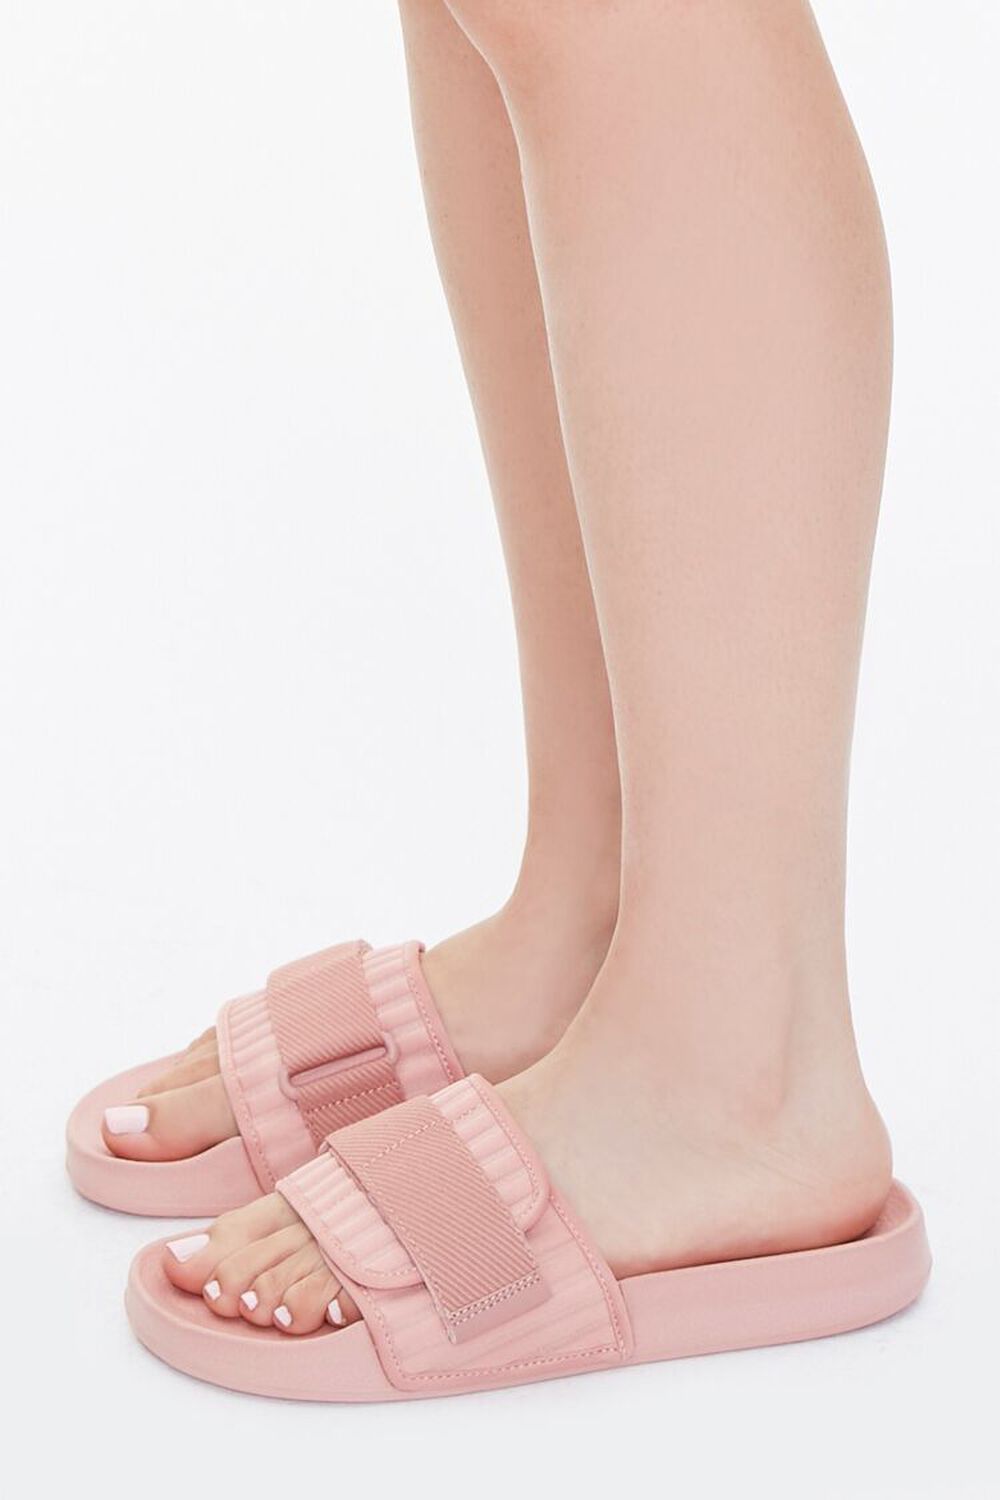 BLUSH Recycled Adjustable Slide Sandals, image 2